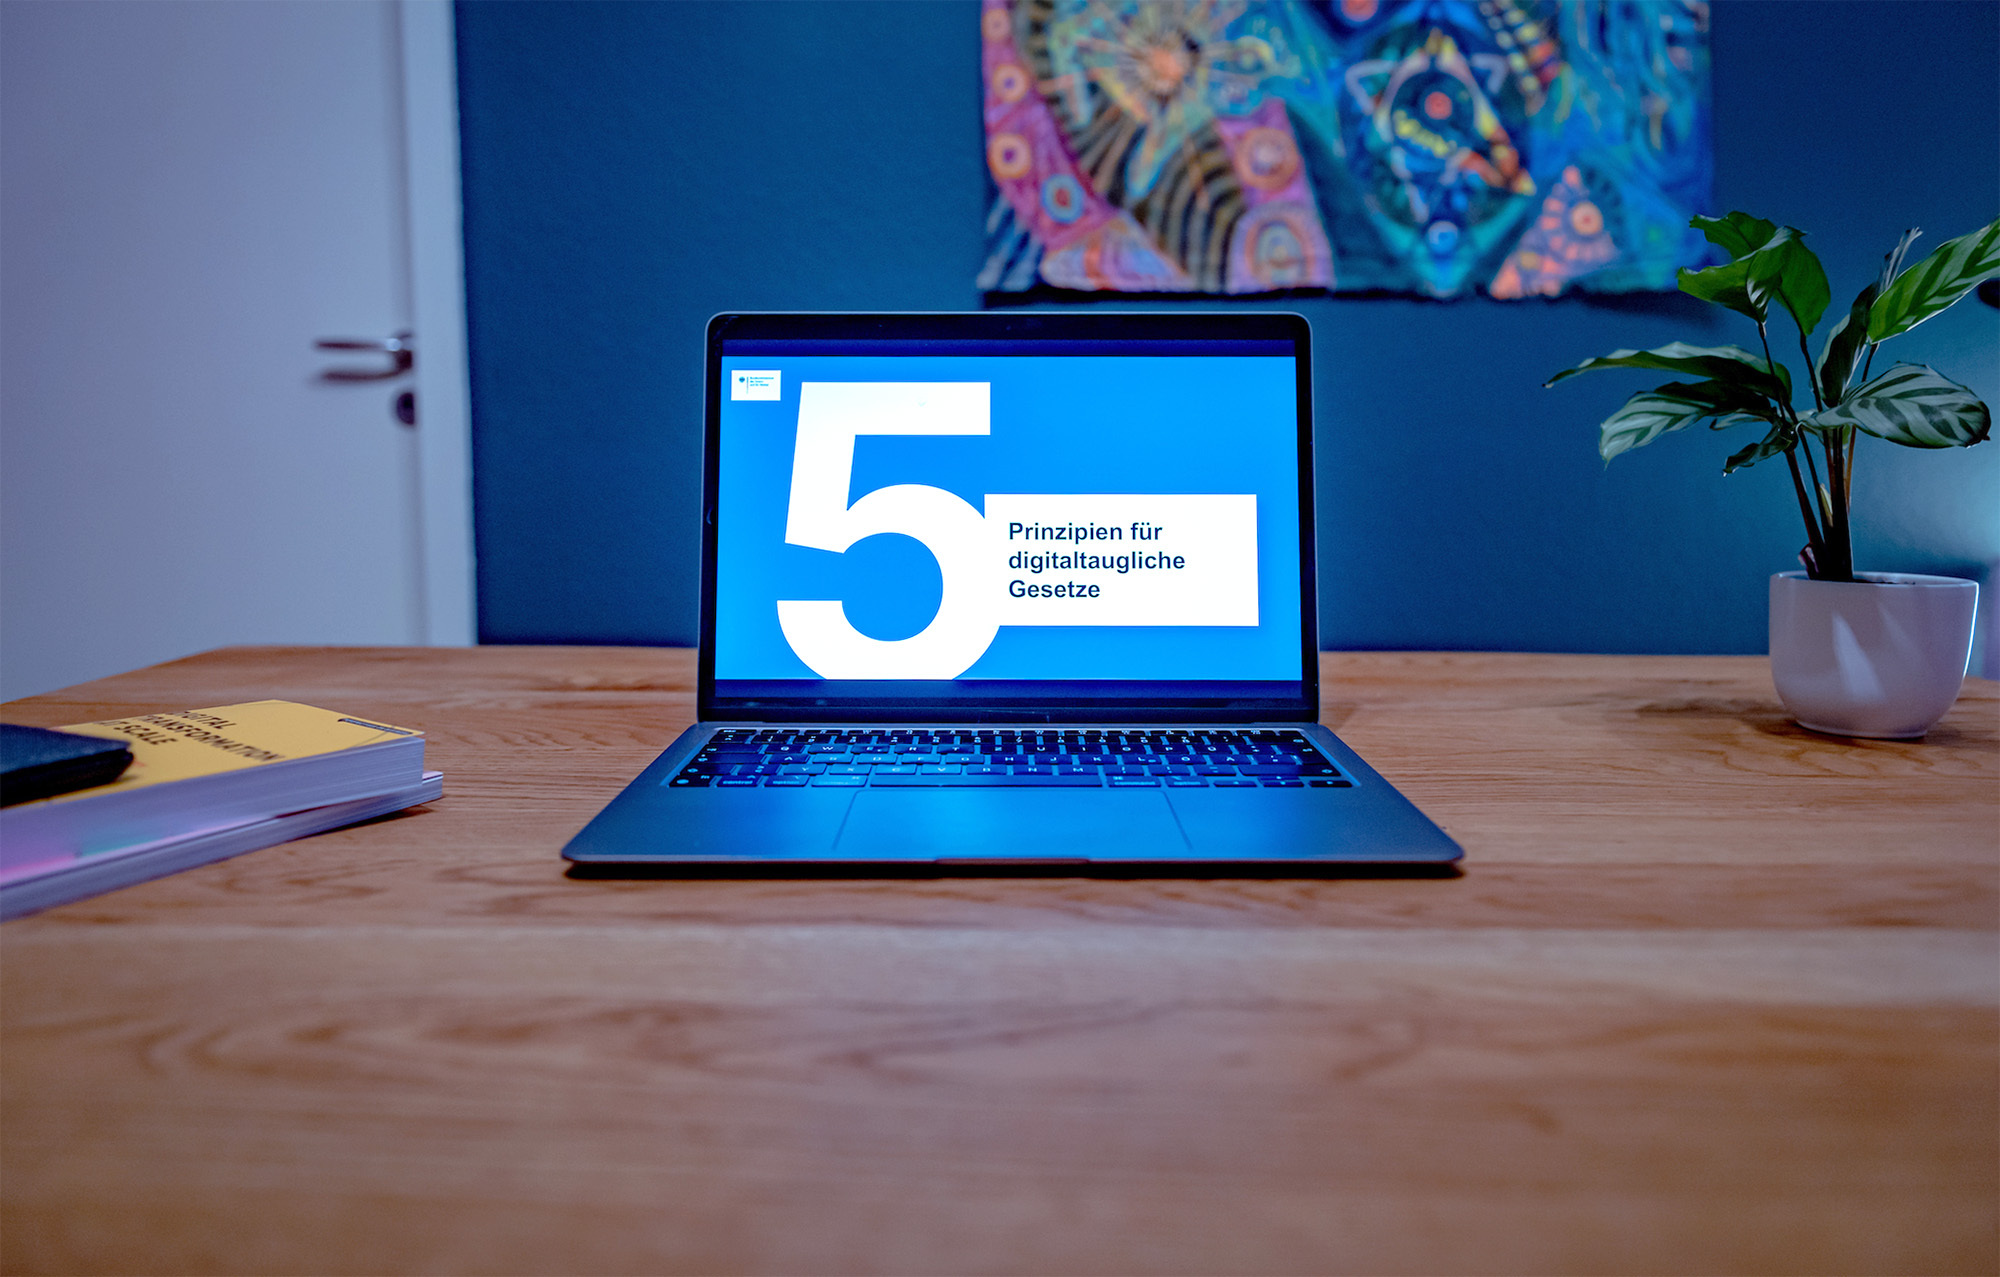 Auf einem Laptop ist die Folie „5 Prinzipien für digitaltaugliche Gesetze“ zu sehen